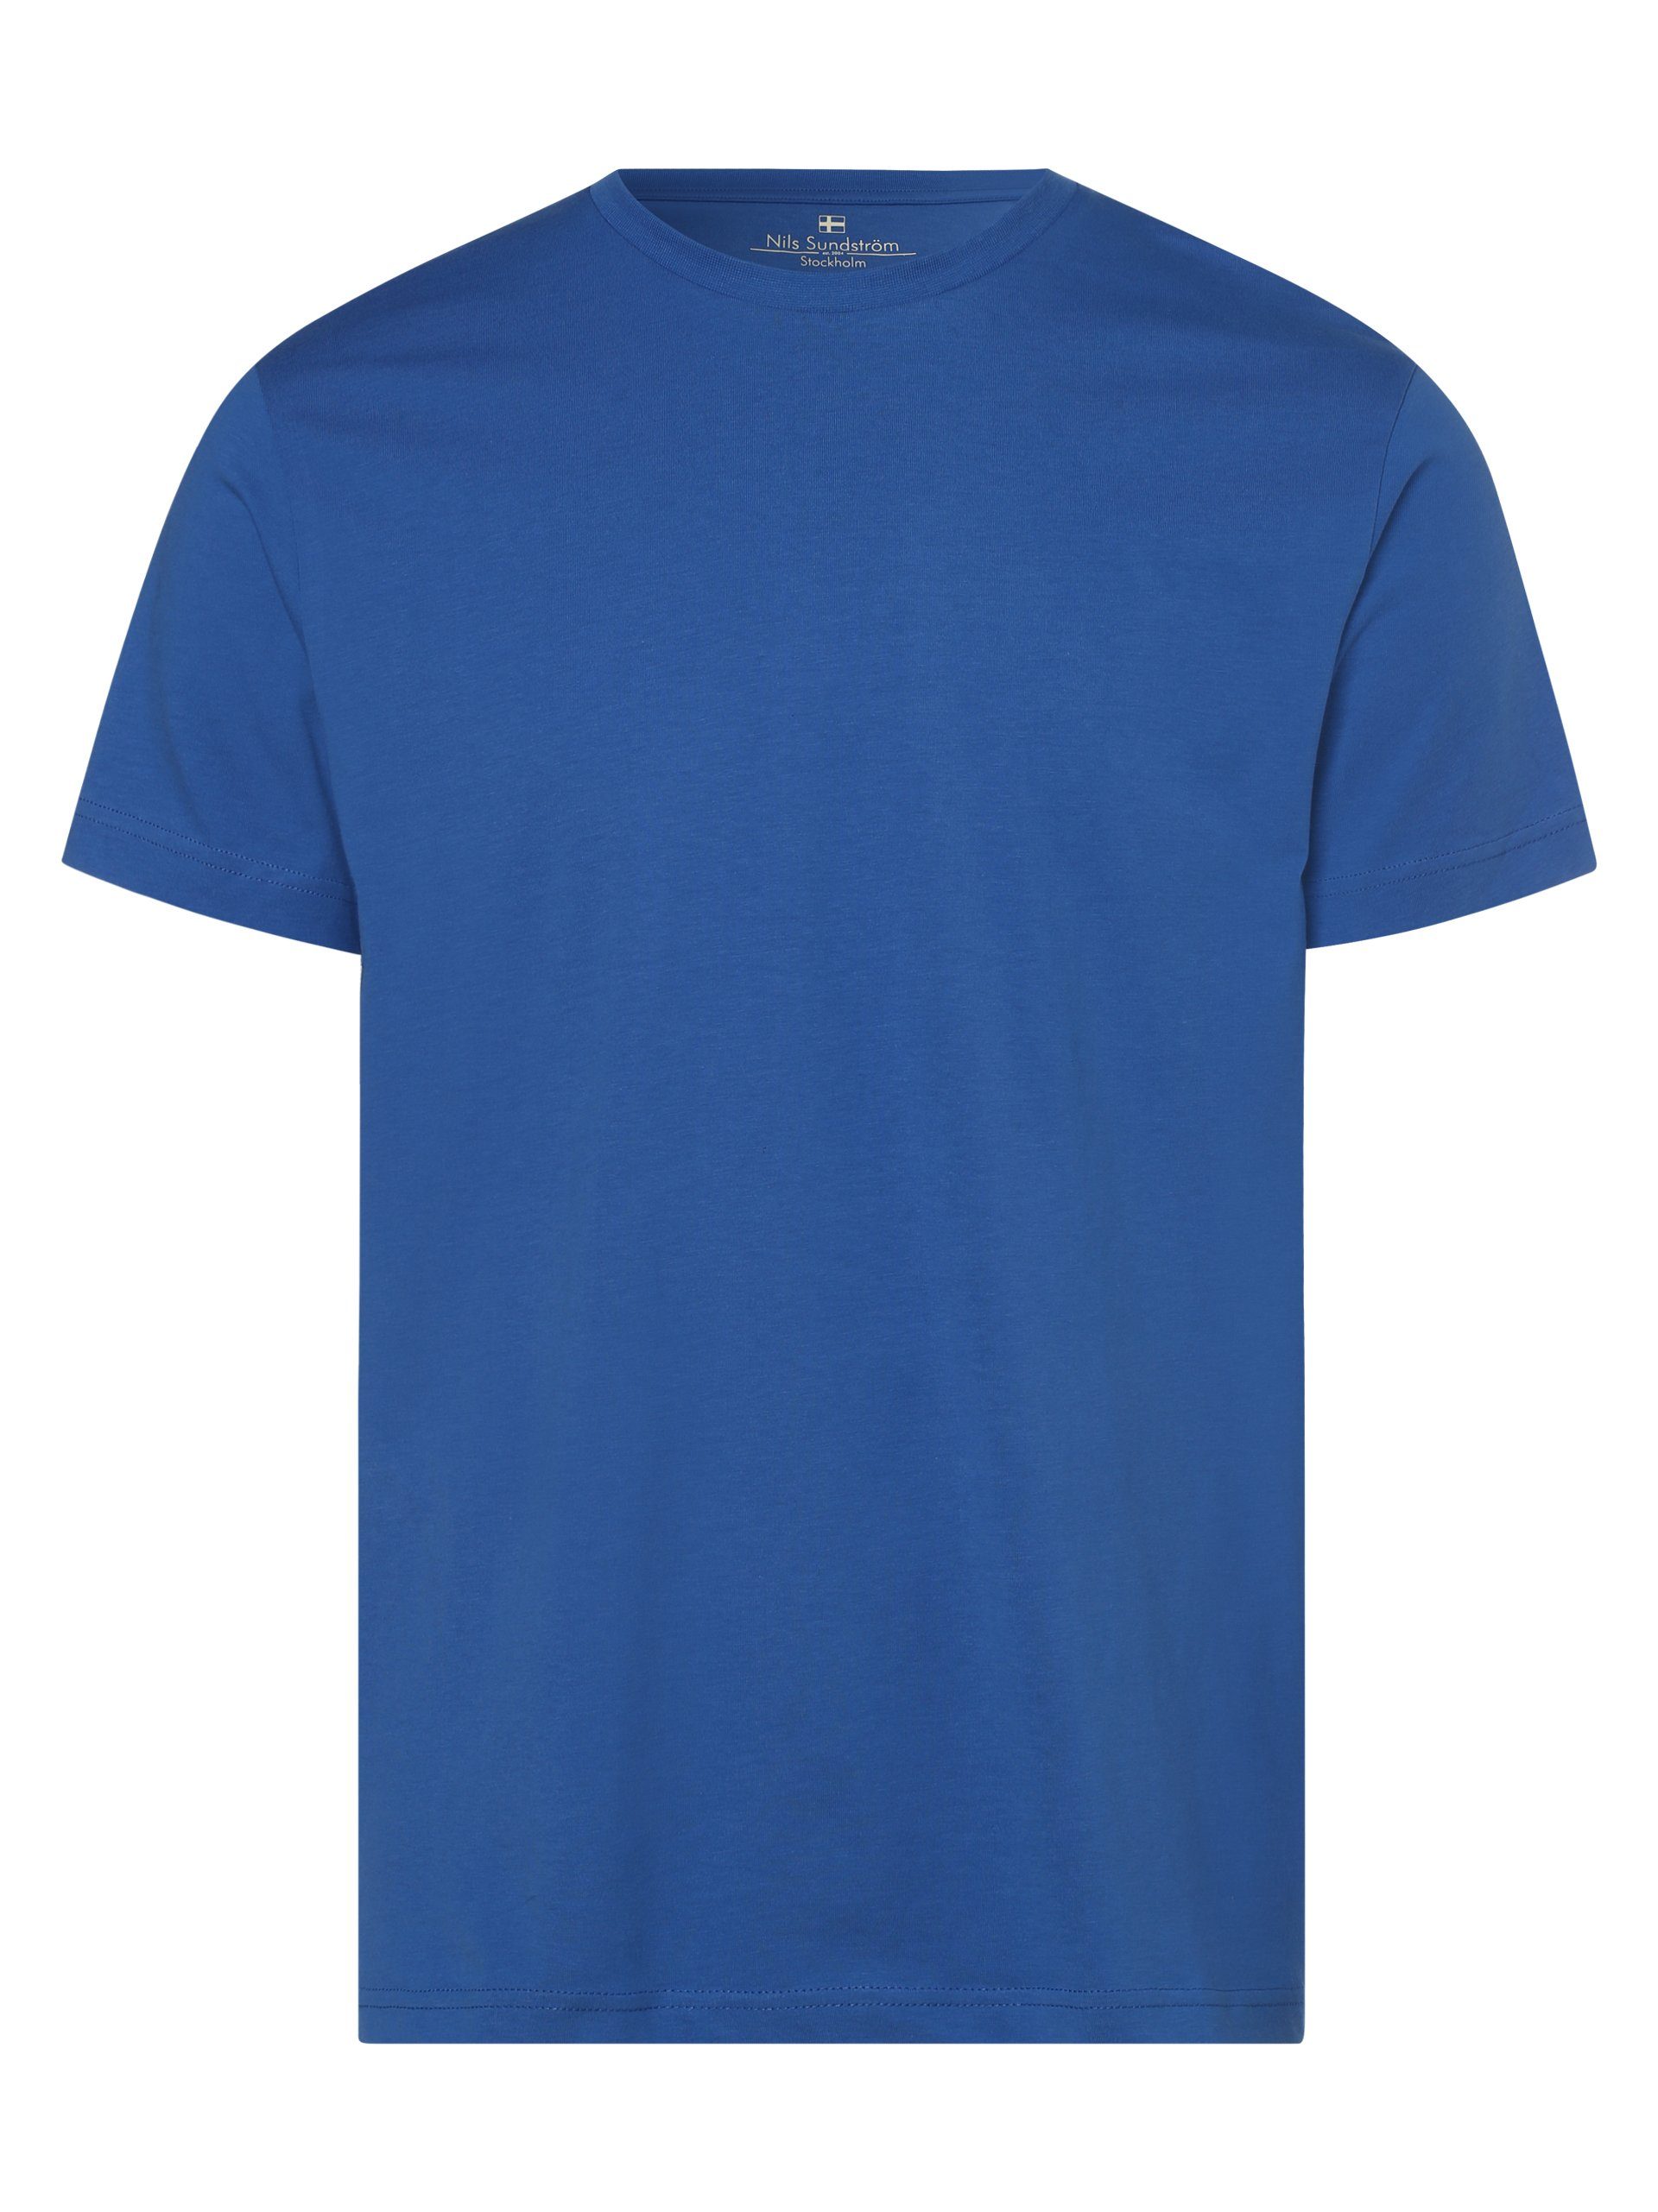 Nils Sundström T-Shirt blau